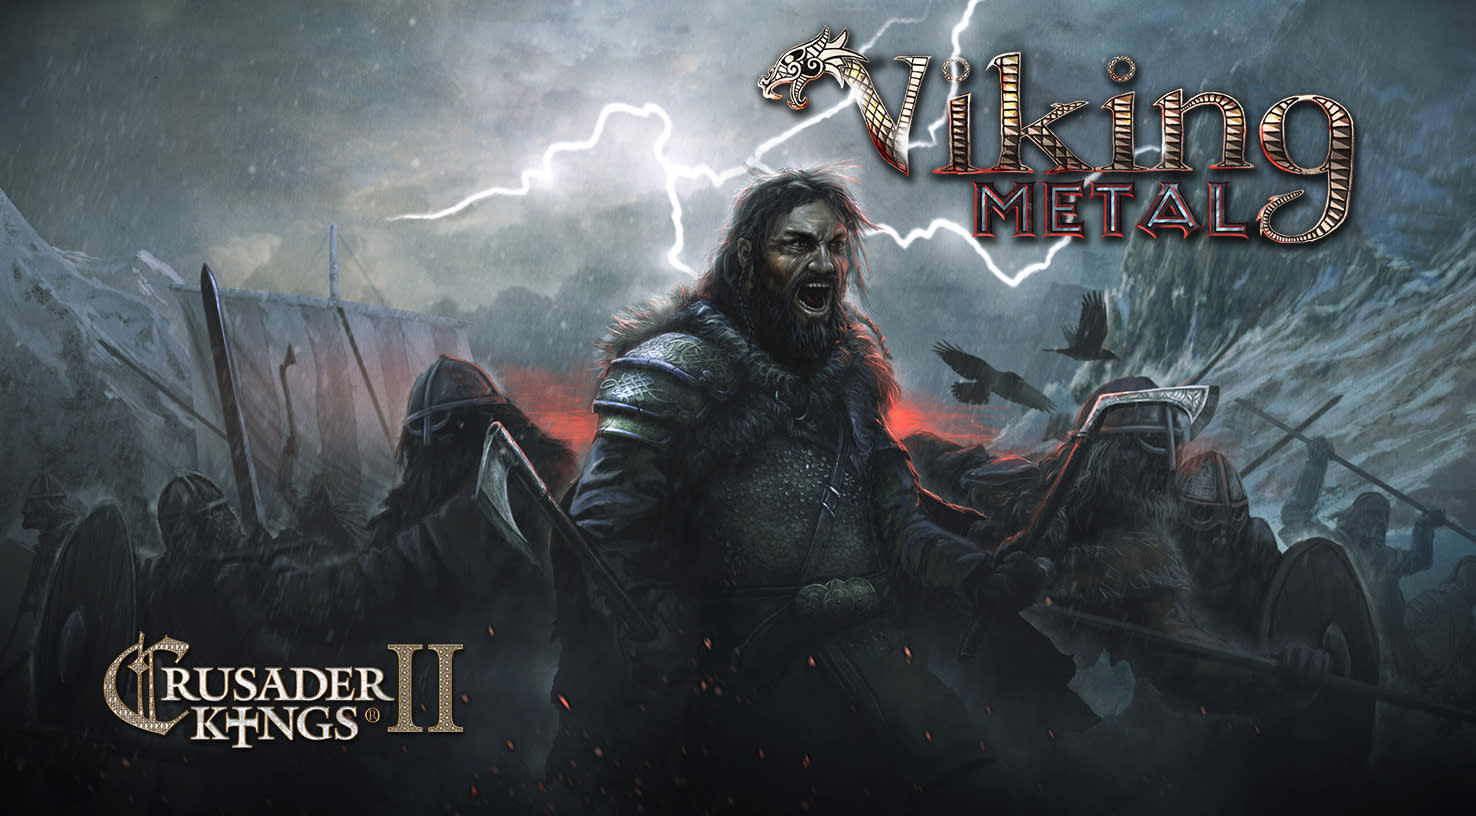 Crusader Kings II: Viking Metal (screenshot 1)